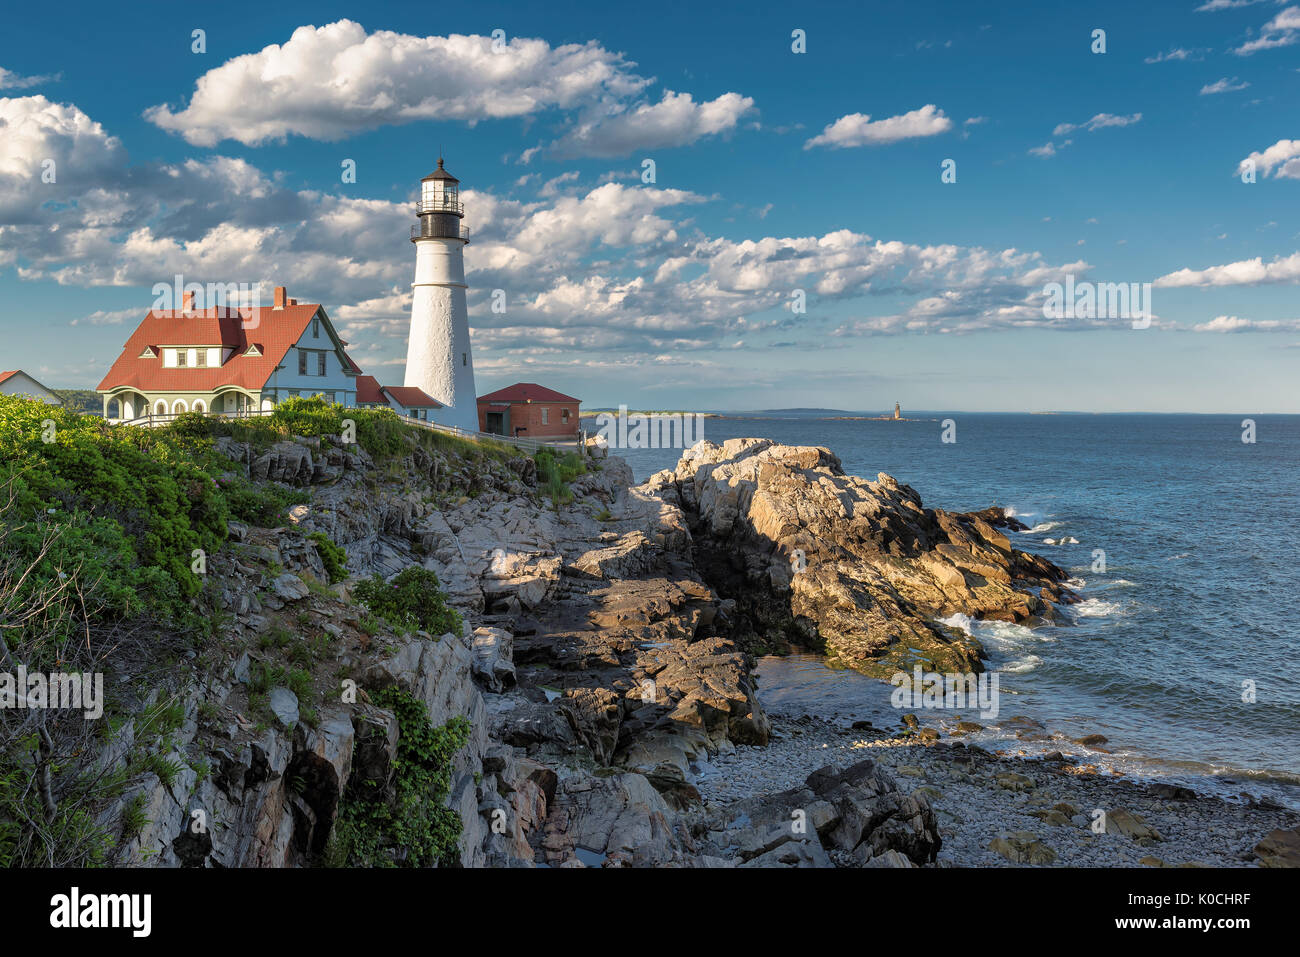 The Portland Head Lighthouse, Maine, USA Stock Photo